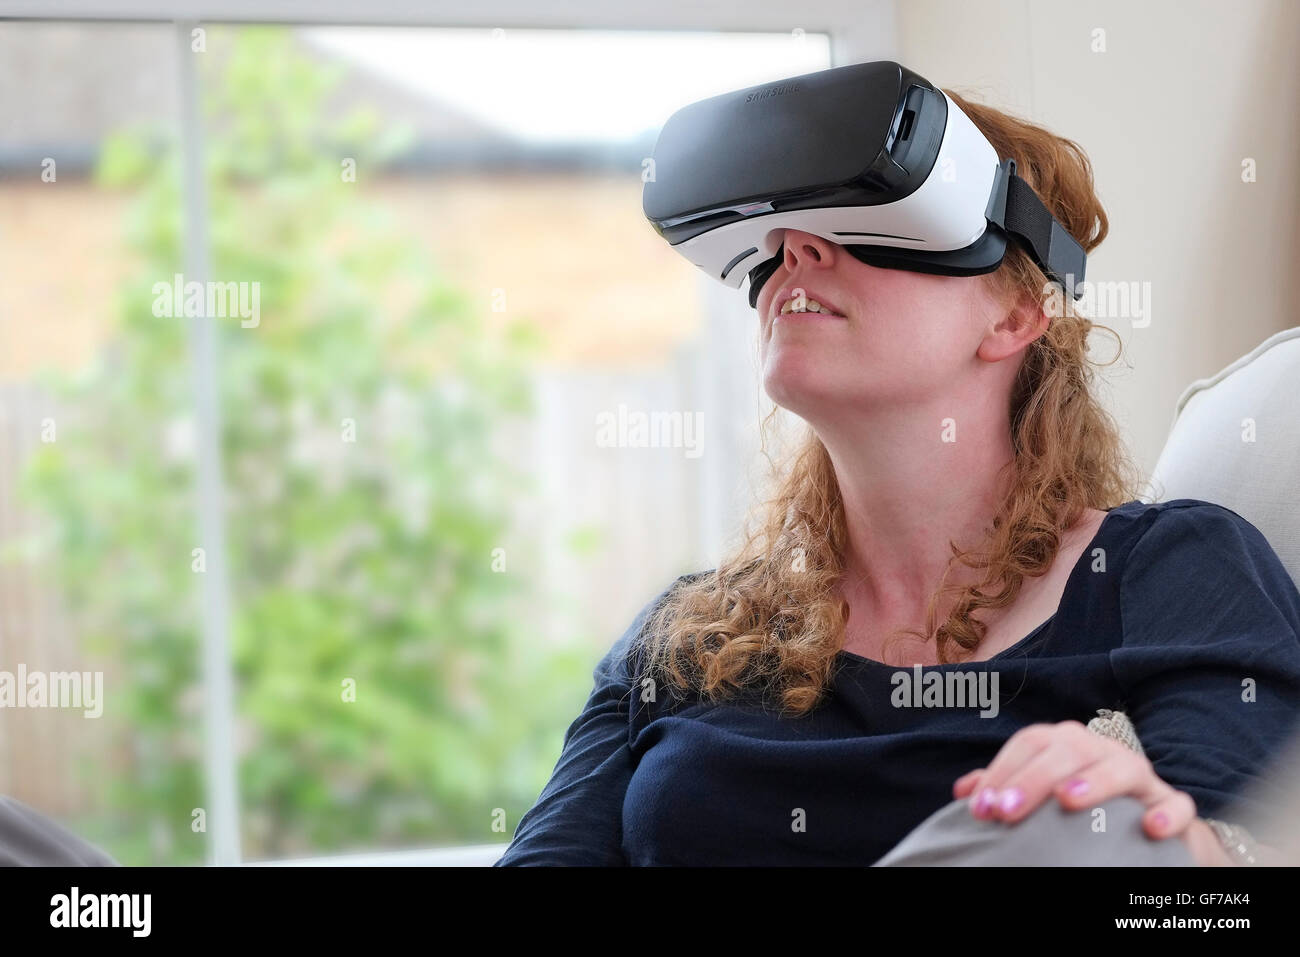 Casque de réalité virtuelle portés par personne de sexe féminin Banque D'Images